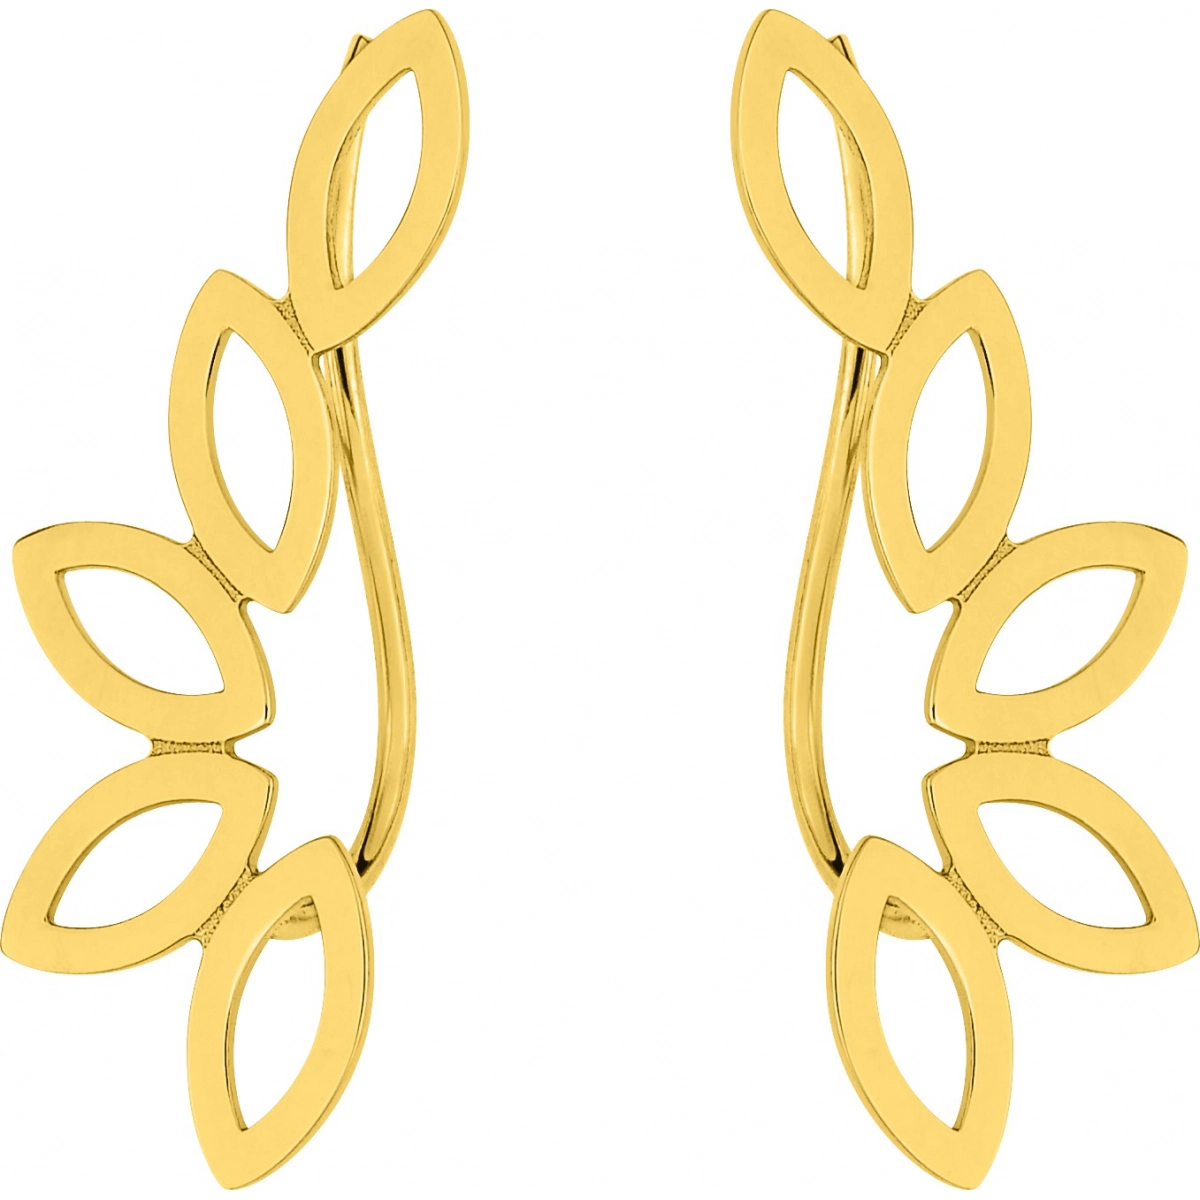 Earrings pair plain gold 9K YG  Lua Blanca  S12.37001.0